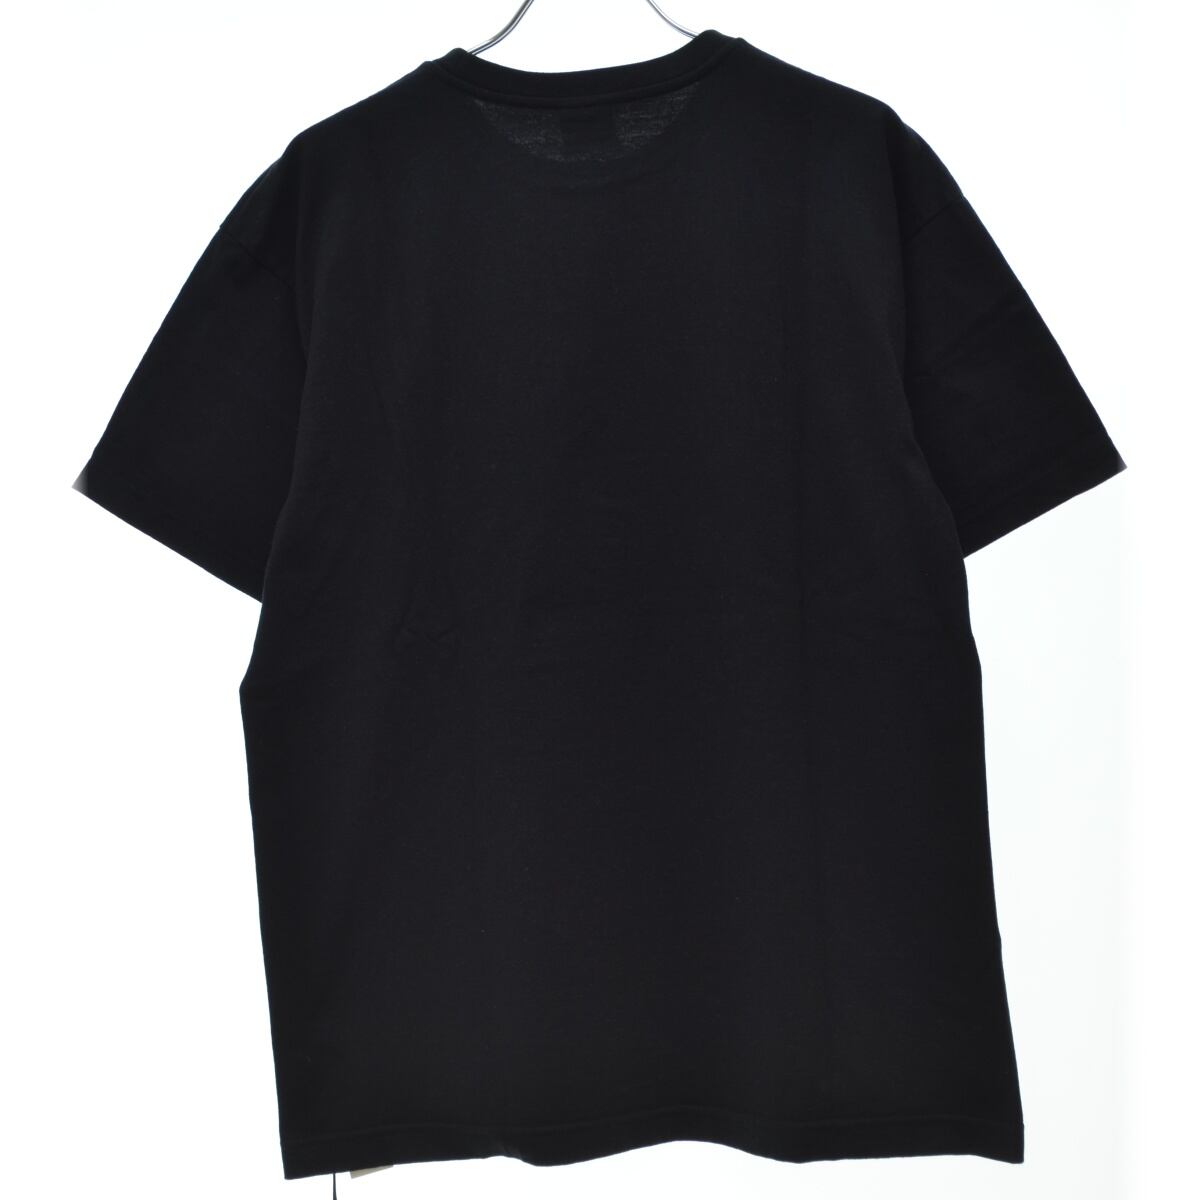 WTAPS 22ss URBAN TERRITORY XL Tシャツ